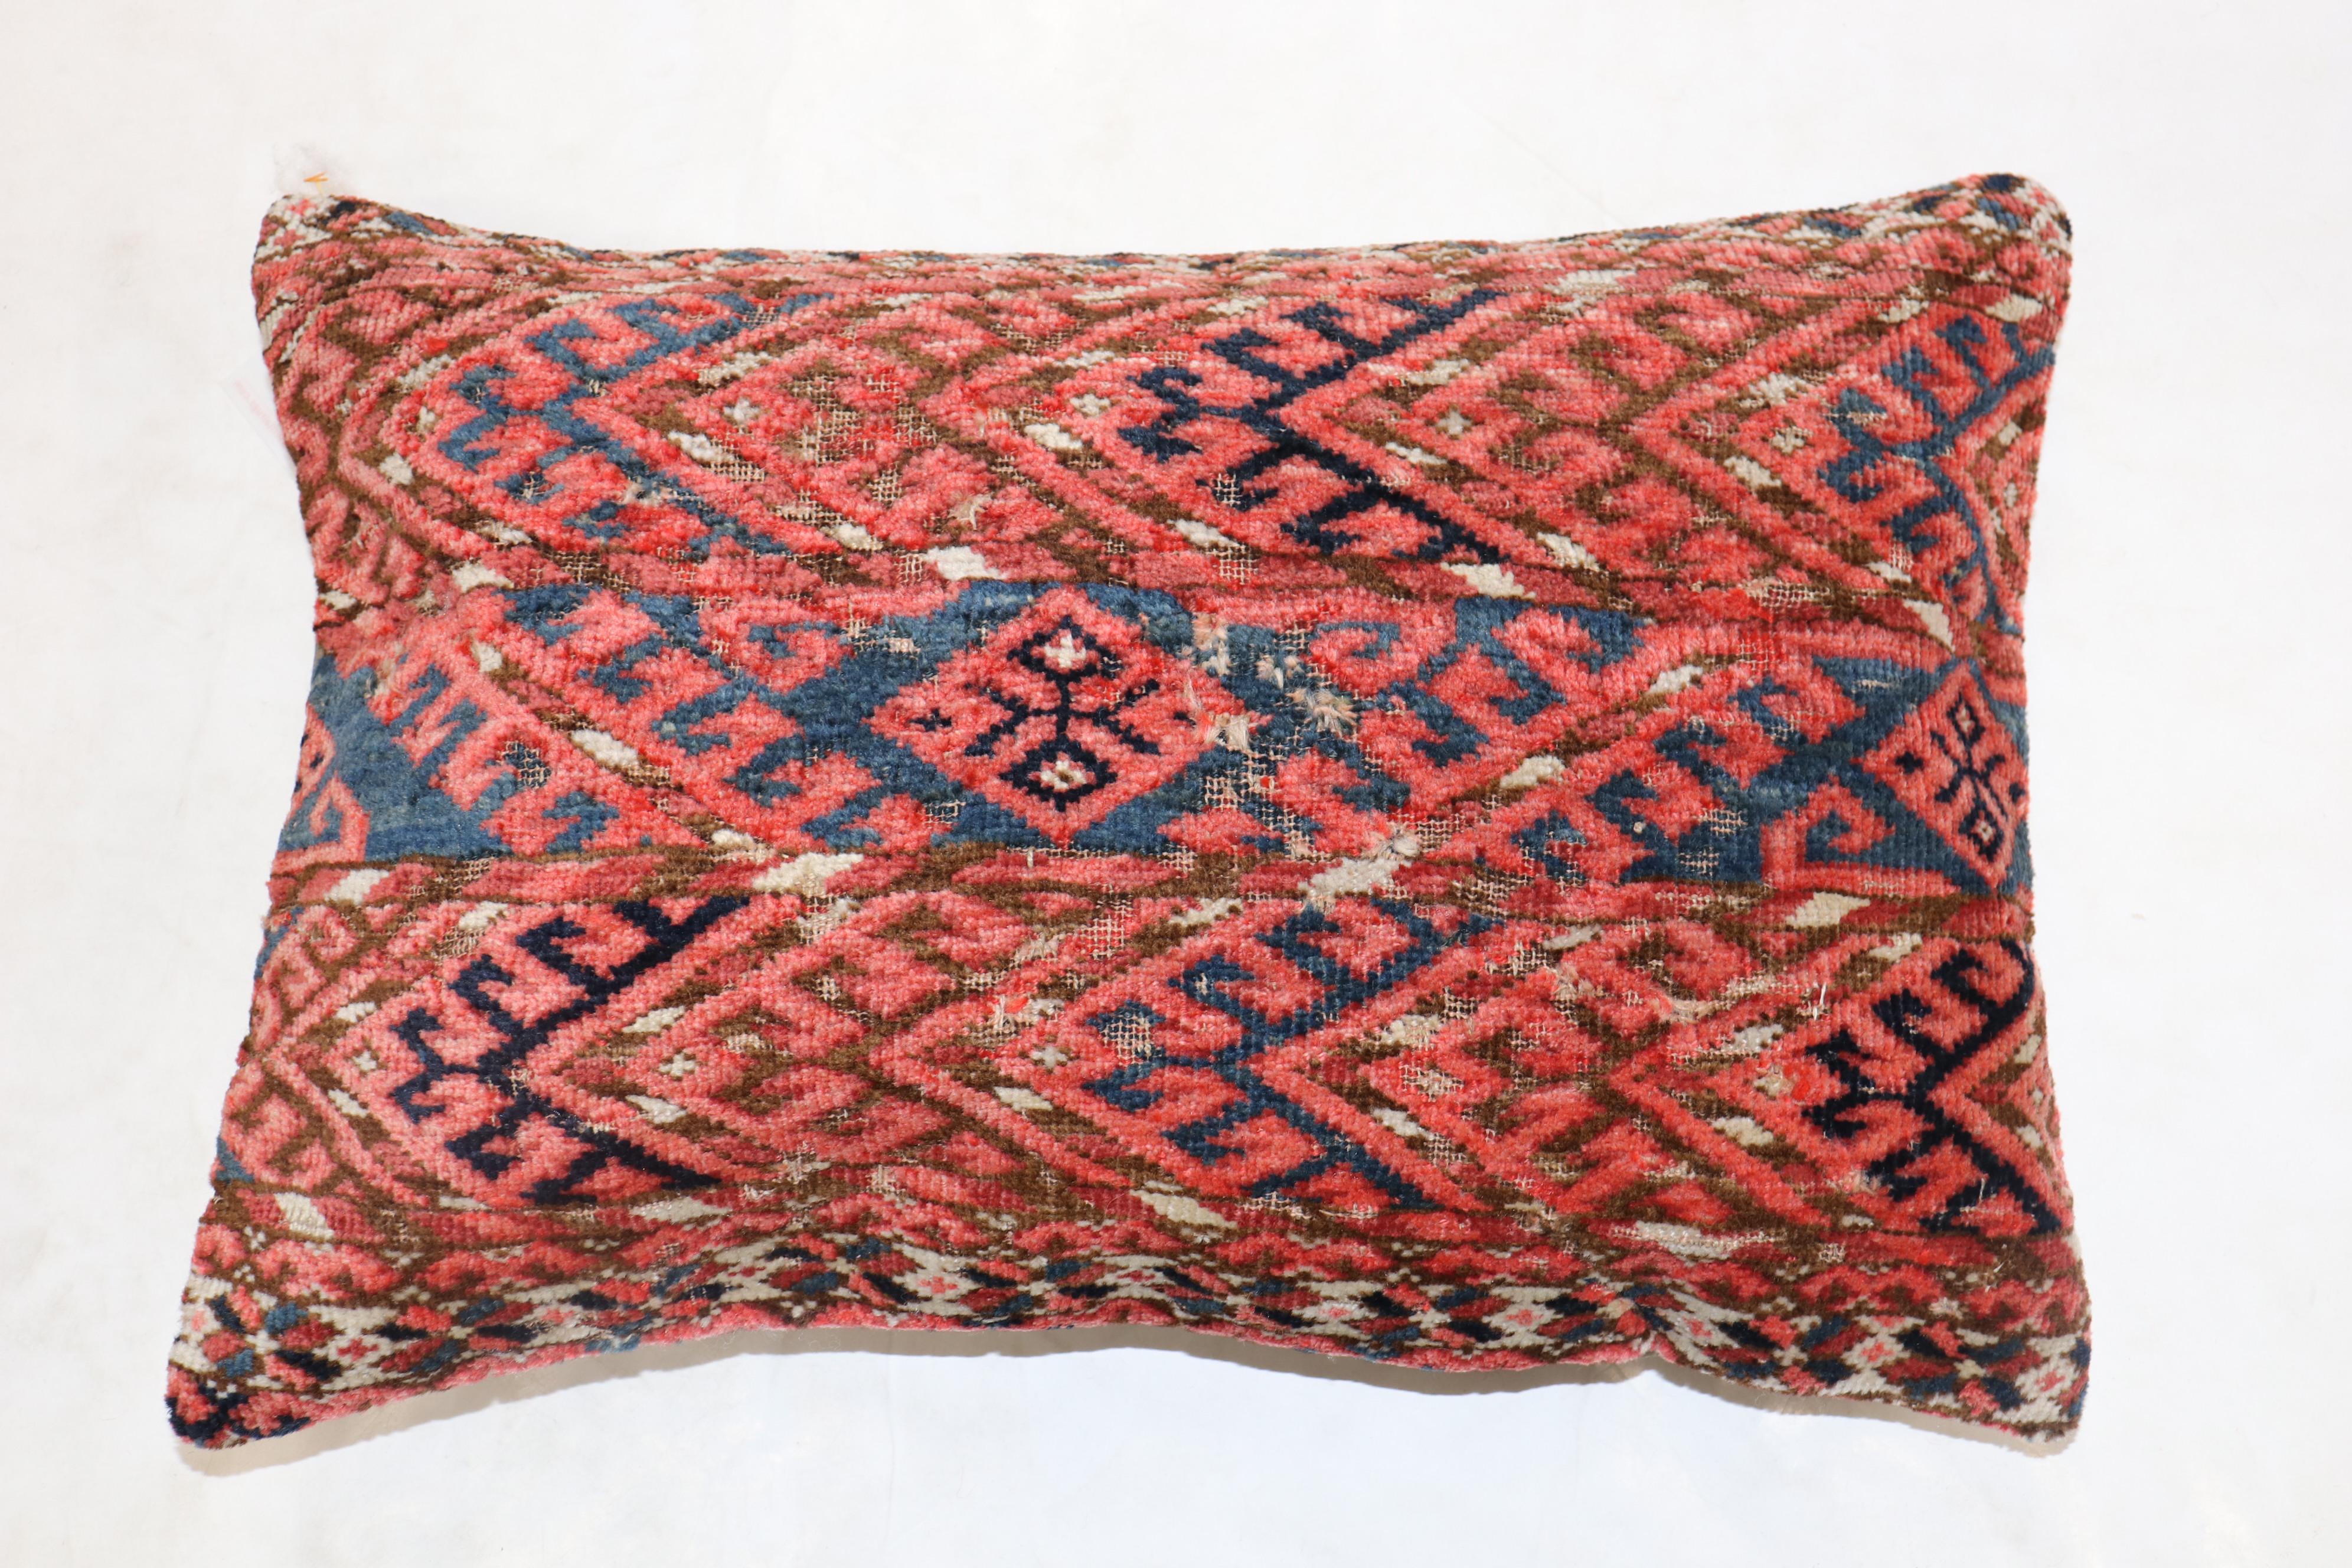 Kissen aus einem Tekke-Teppich aus dem 19. Jahrhundert in einer Lendengröße.

Maße: 16